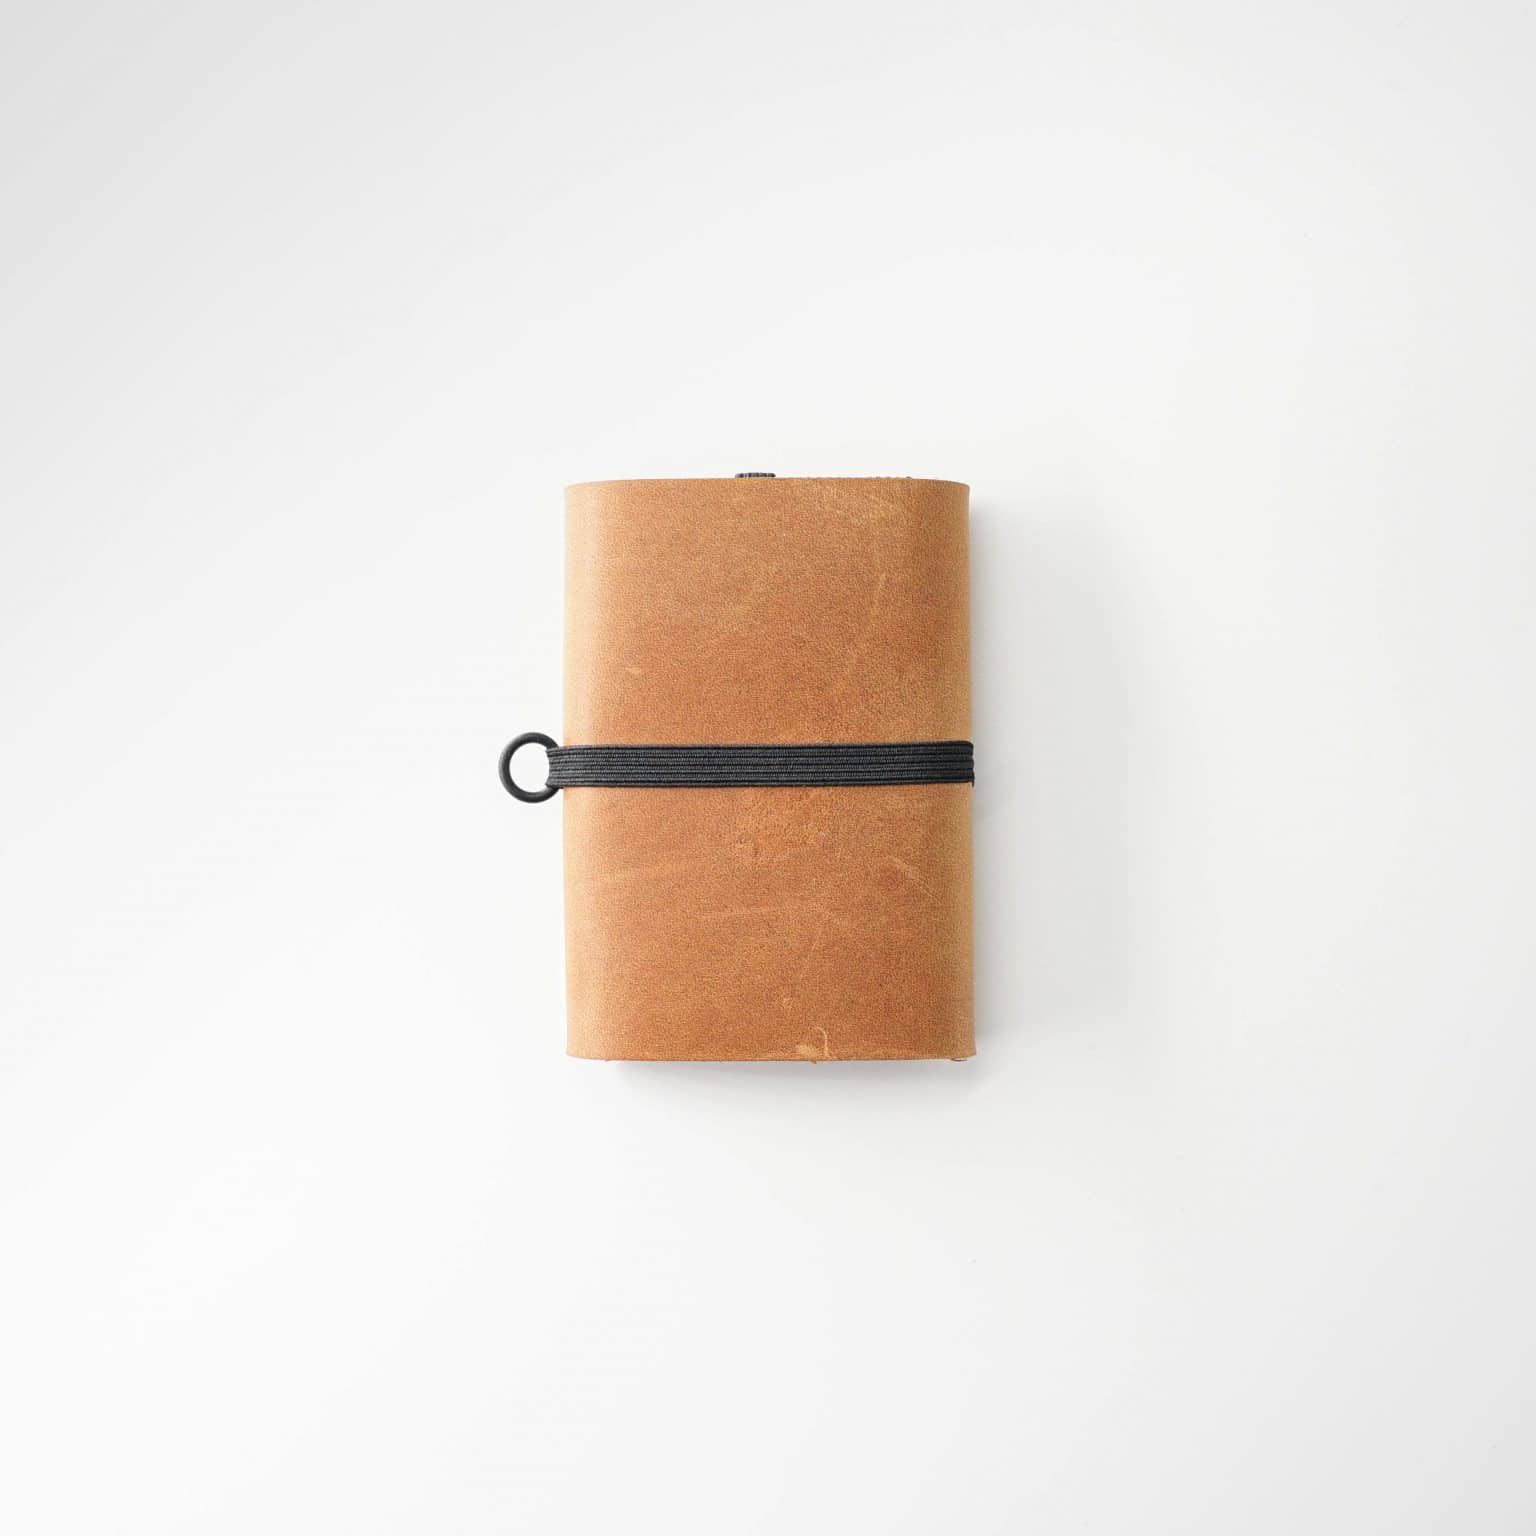 Article Fait-main minimalist portefeuille mettant en valeur la qualité artisanale. t